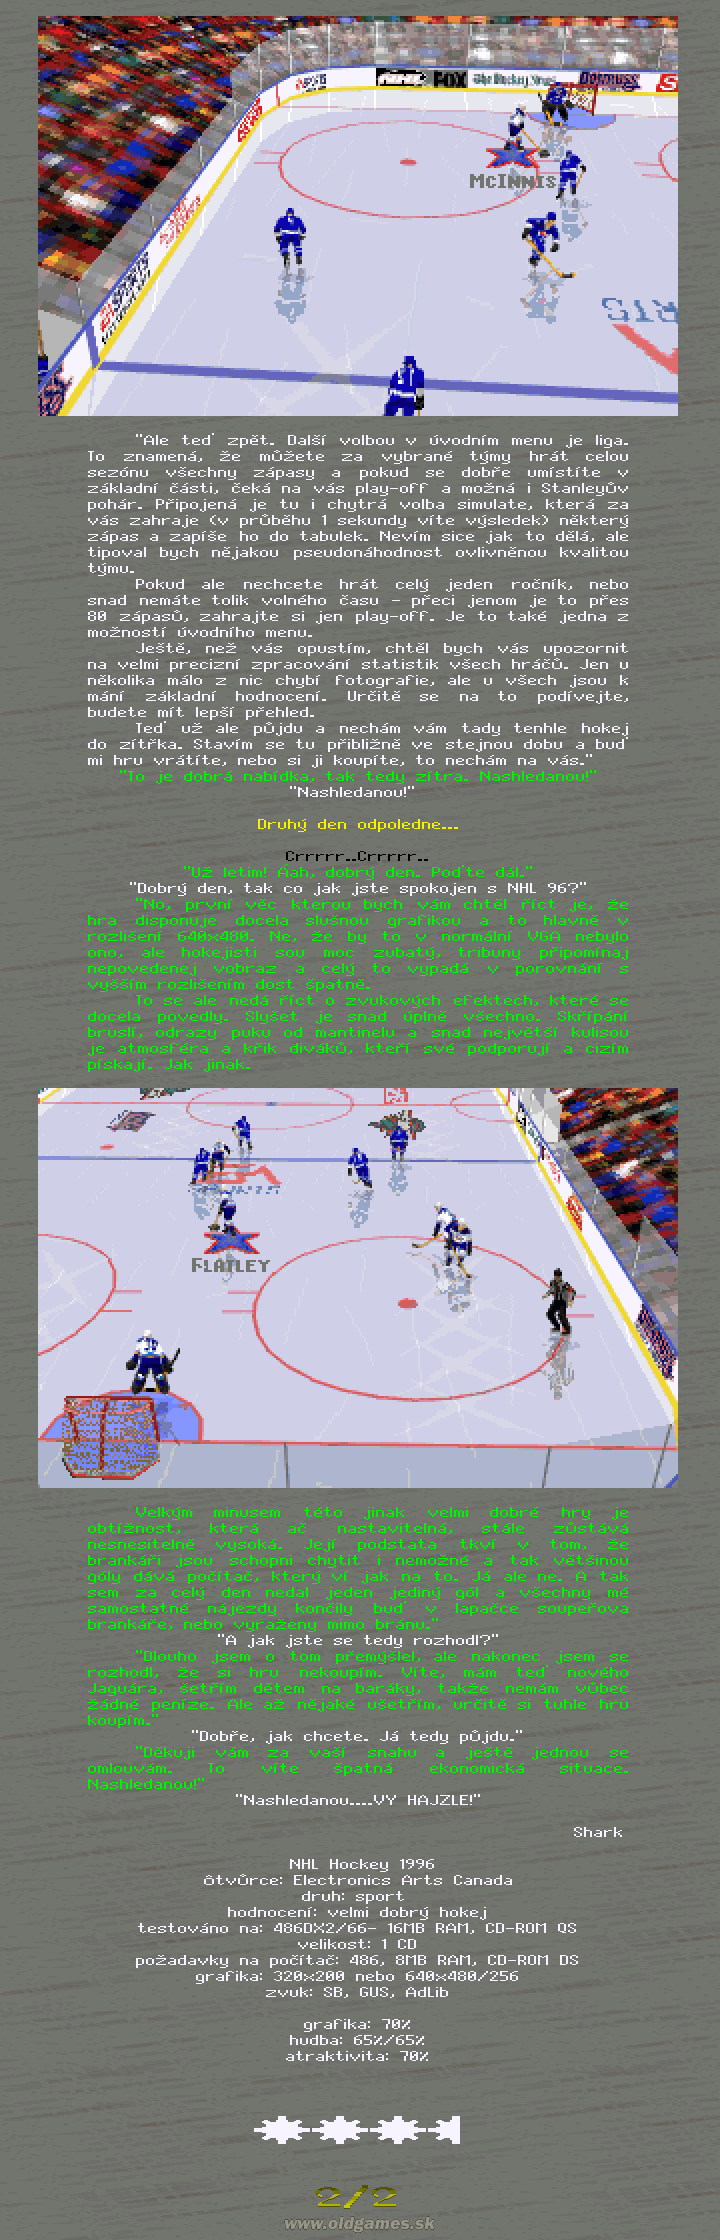 NHL Hockey 96 (2/2)